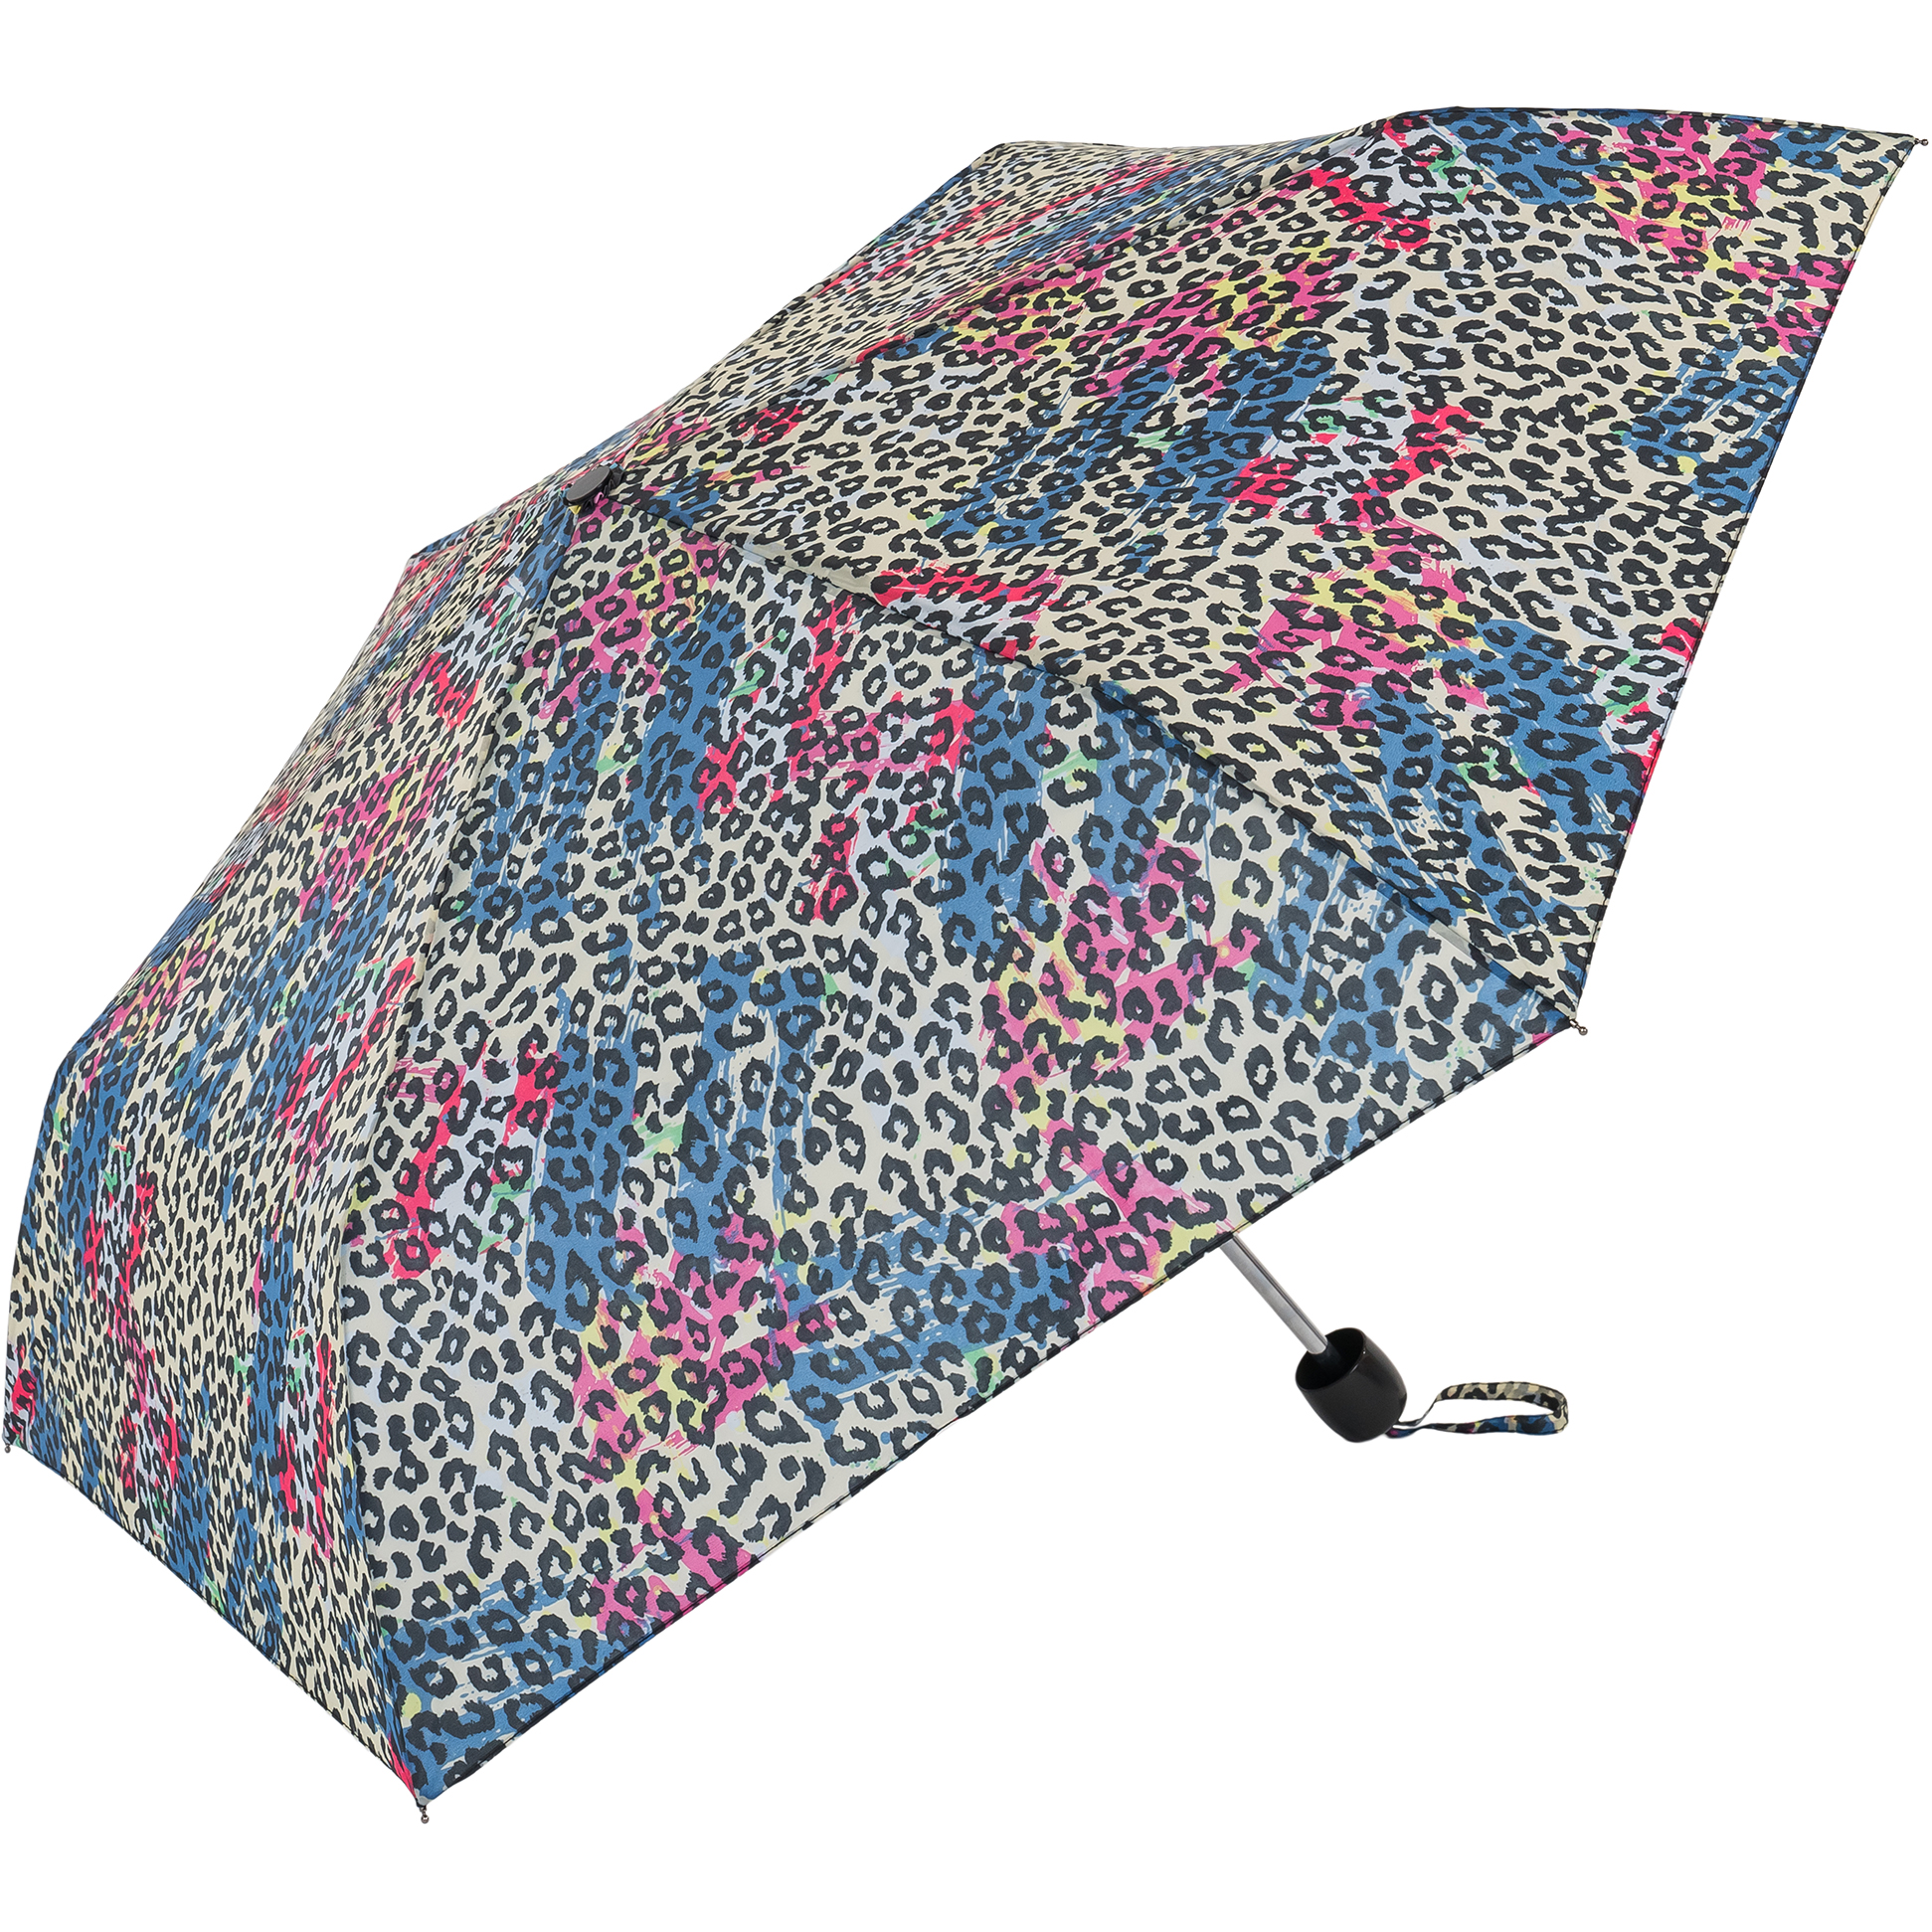 Leopard Print Compact Women's Umbrella (31102L)